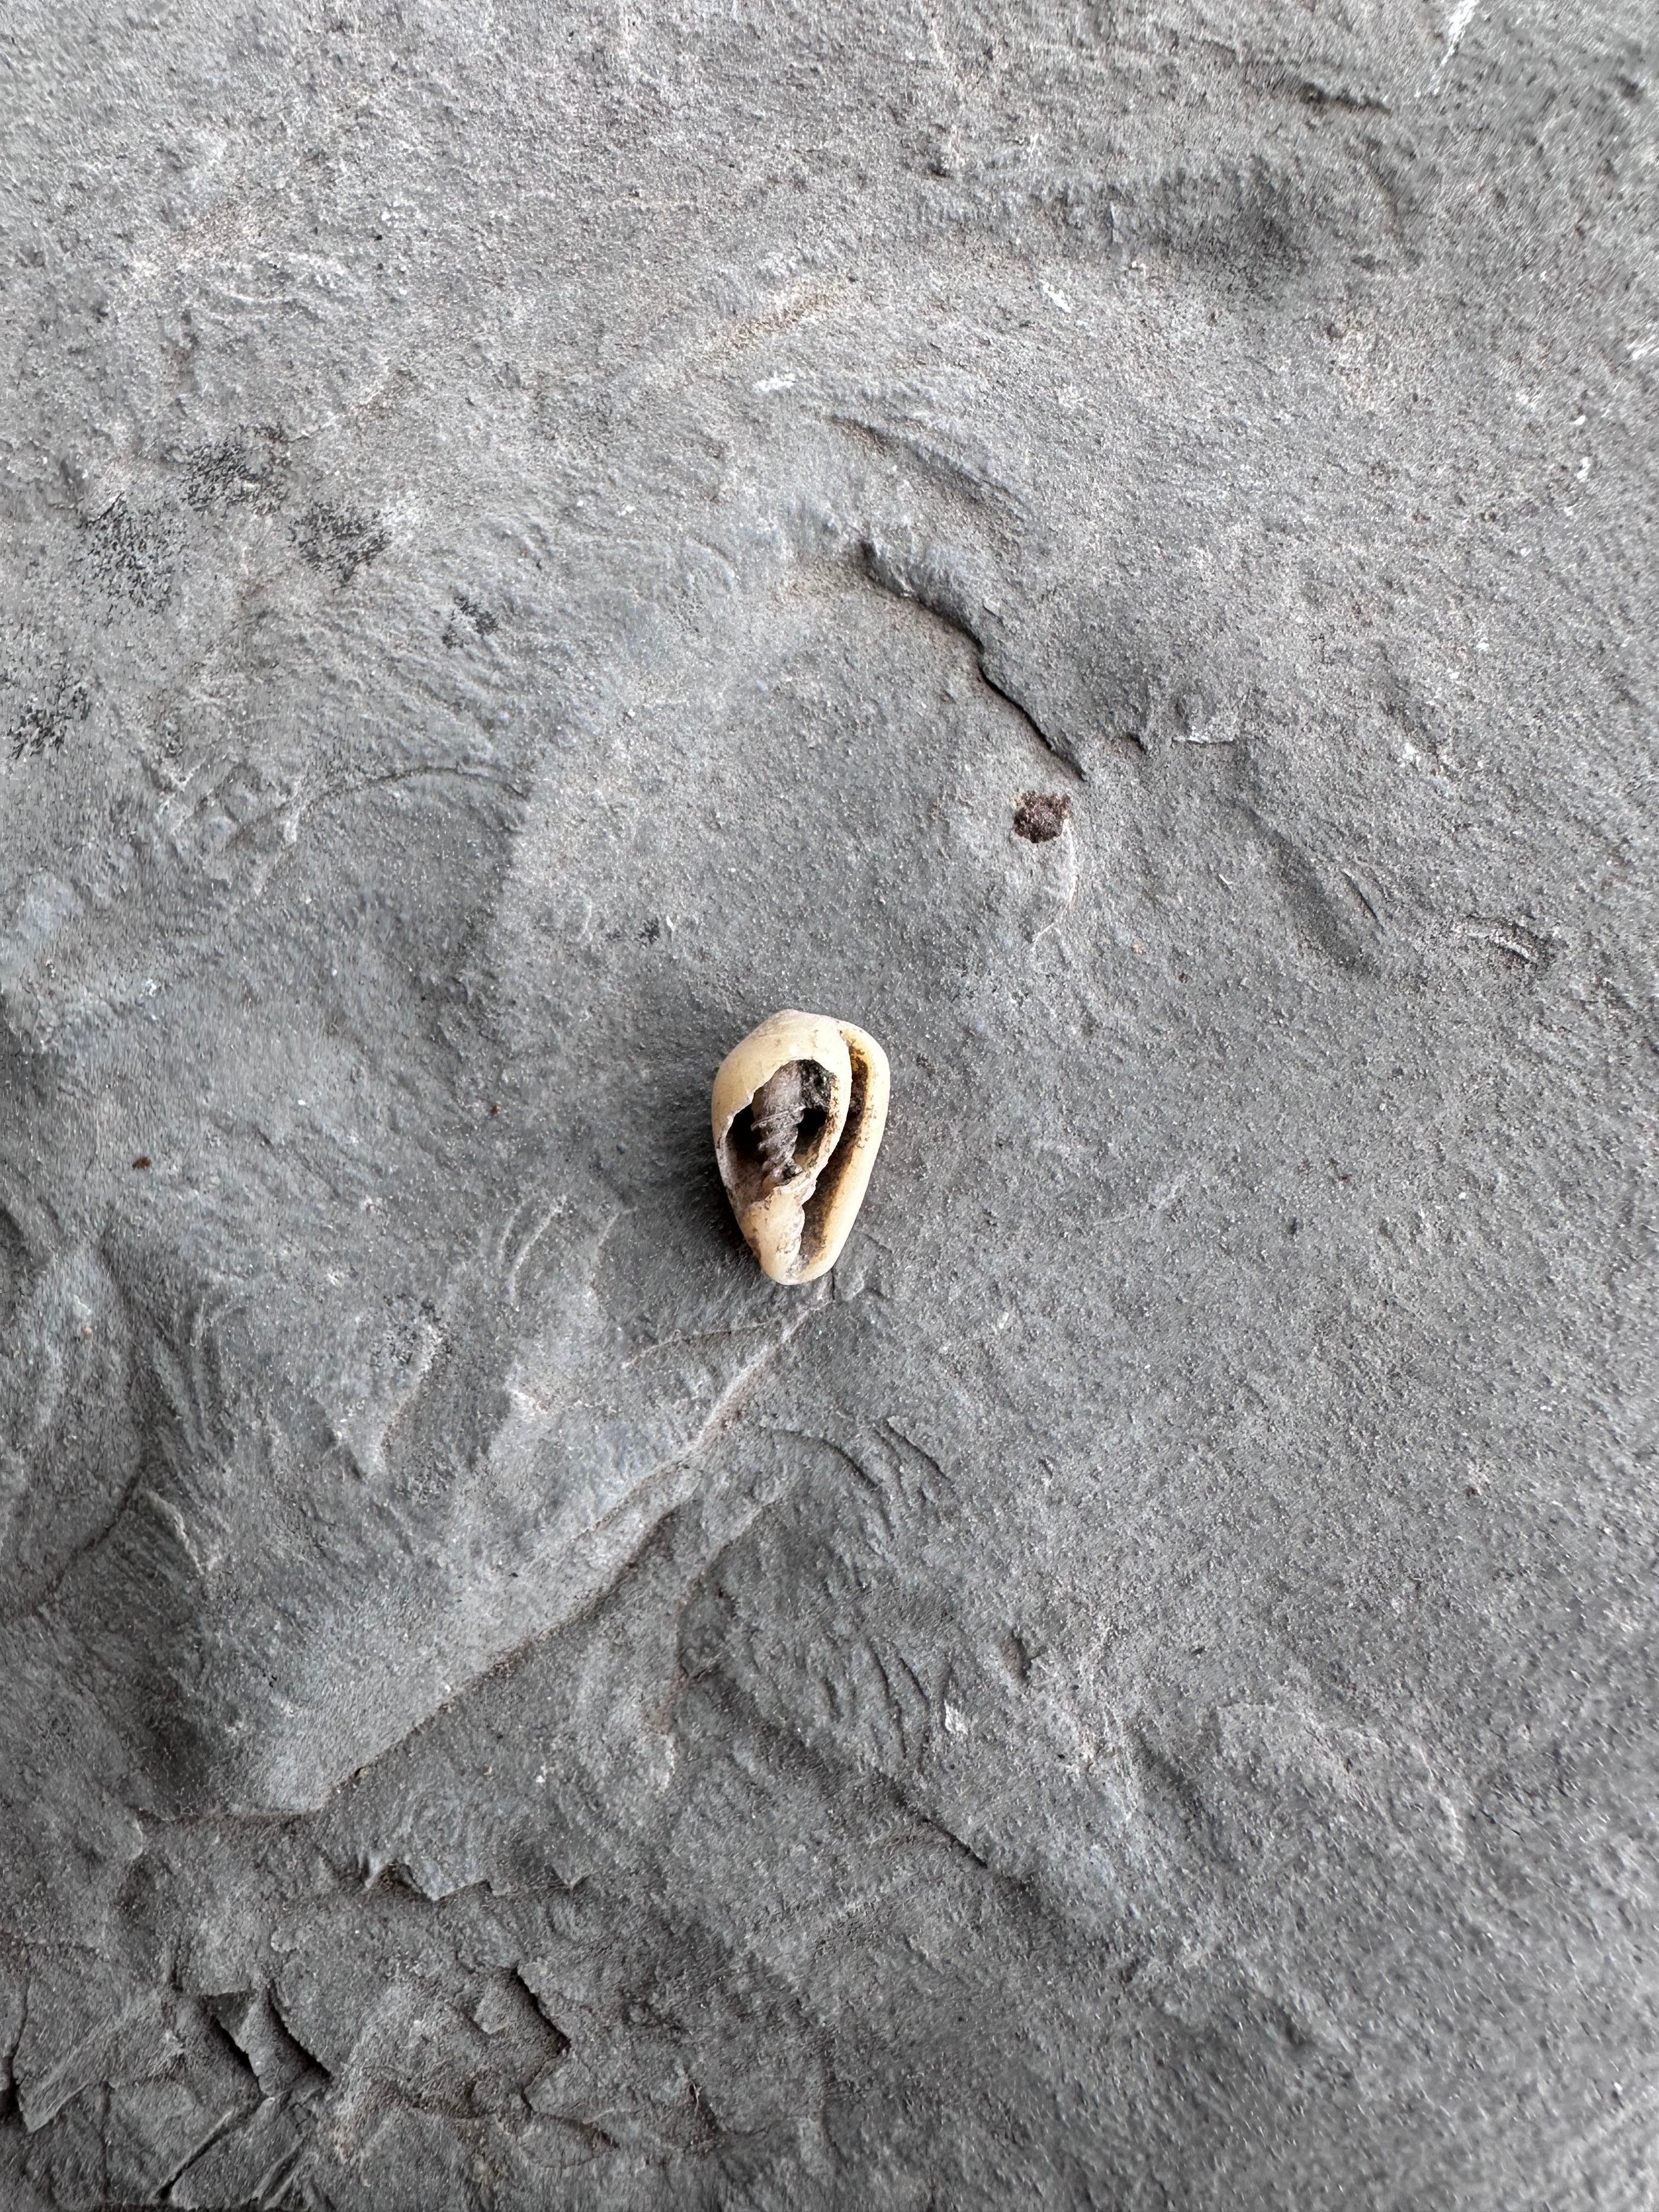 Un caracol marino hallado al interior de la cueva.